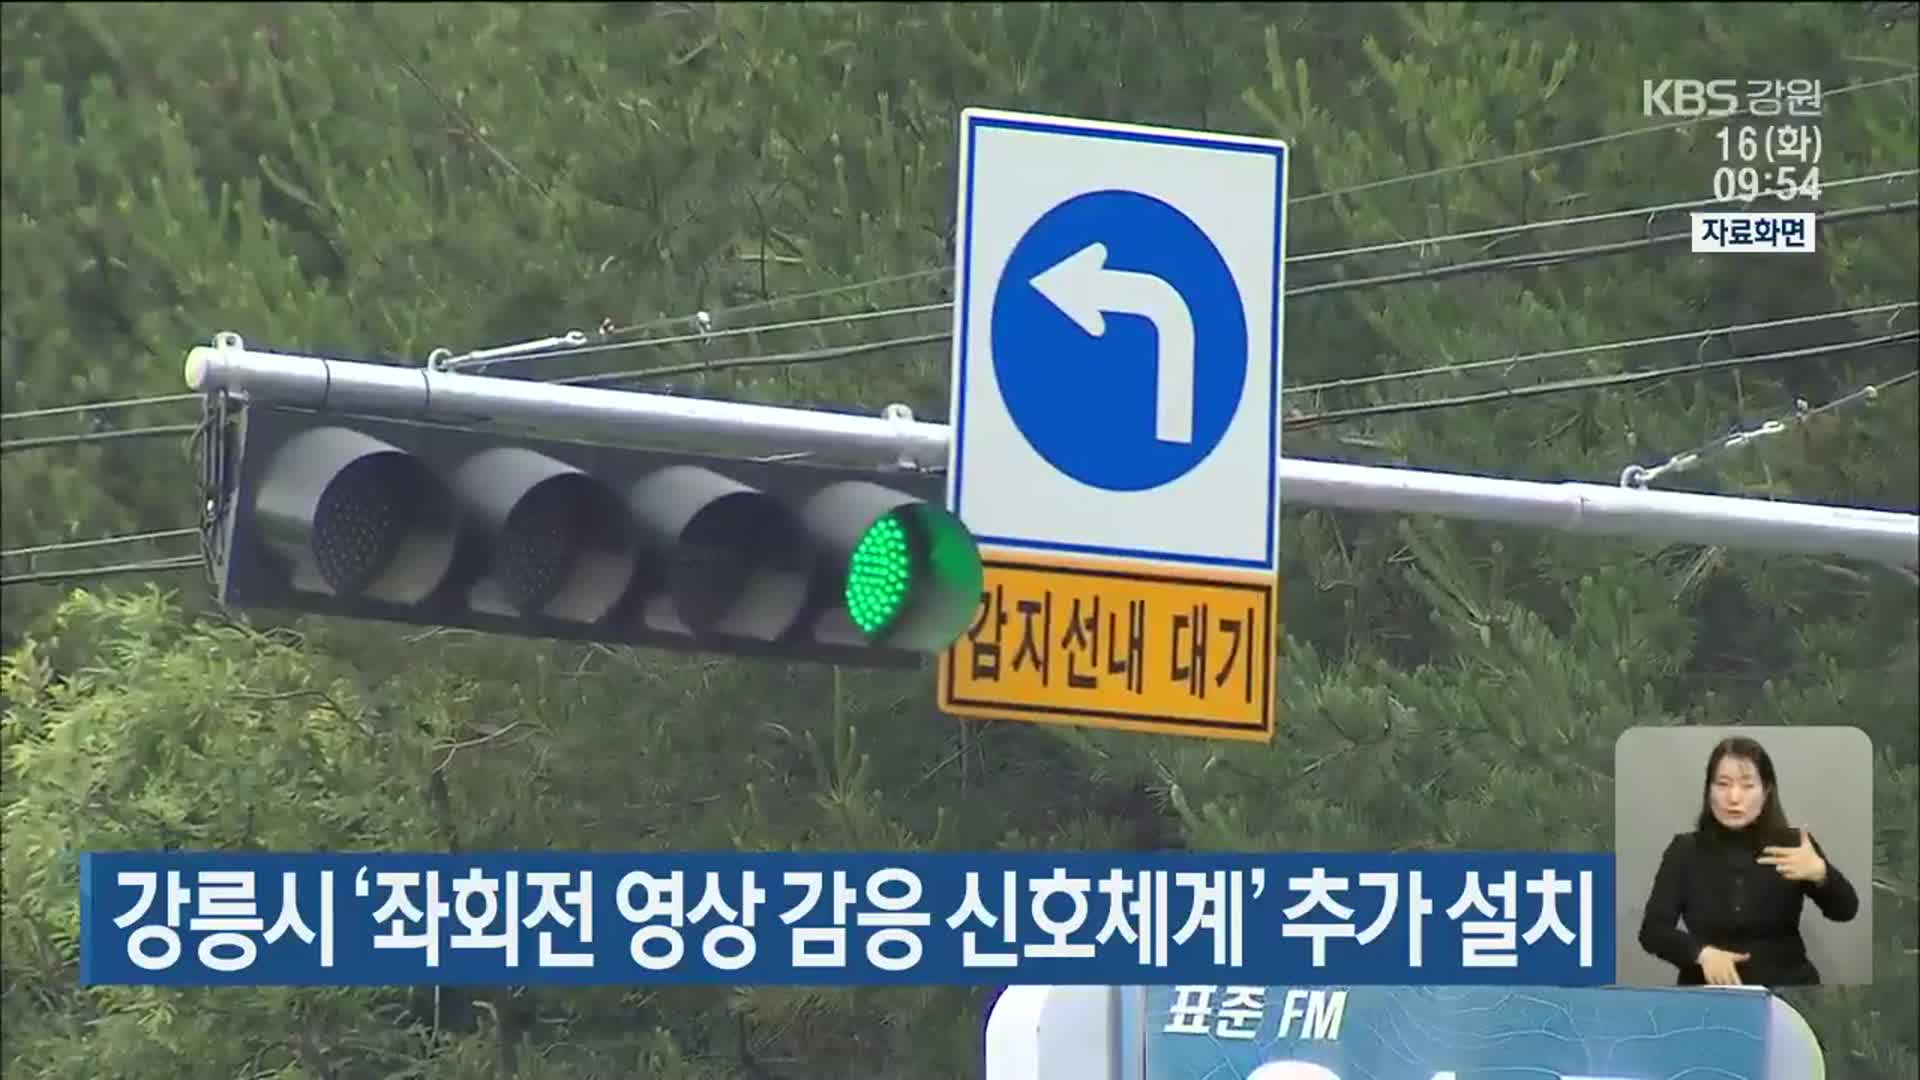 강릉시 ‘좌회전 영상 감응 신호체계’ 추가 설치